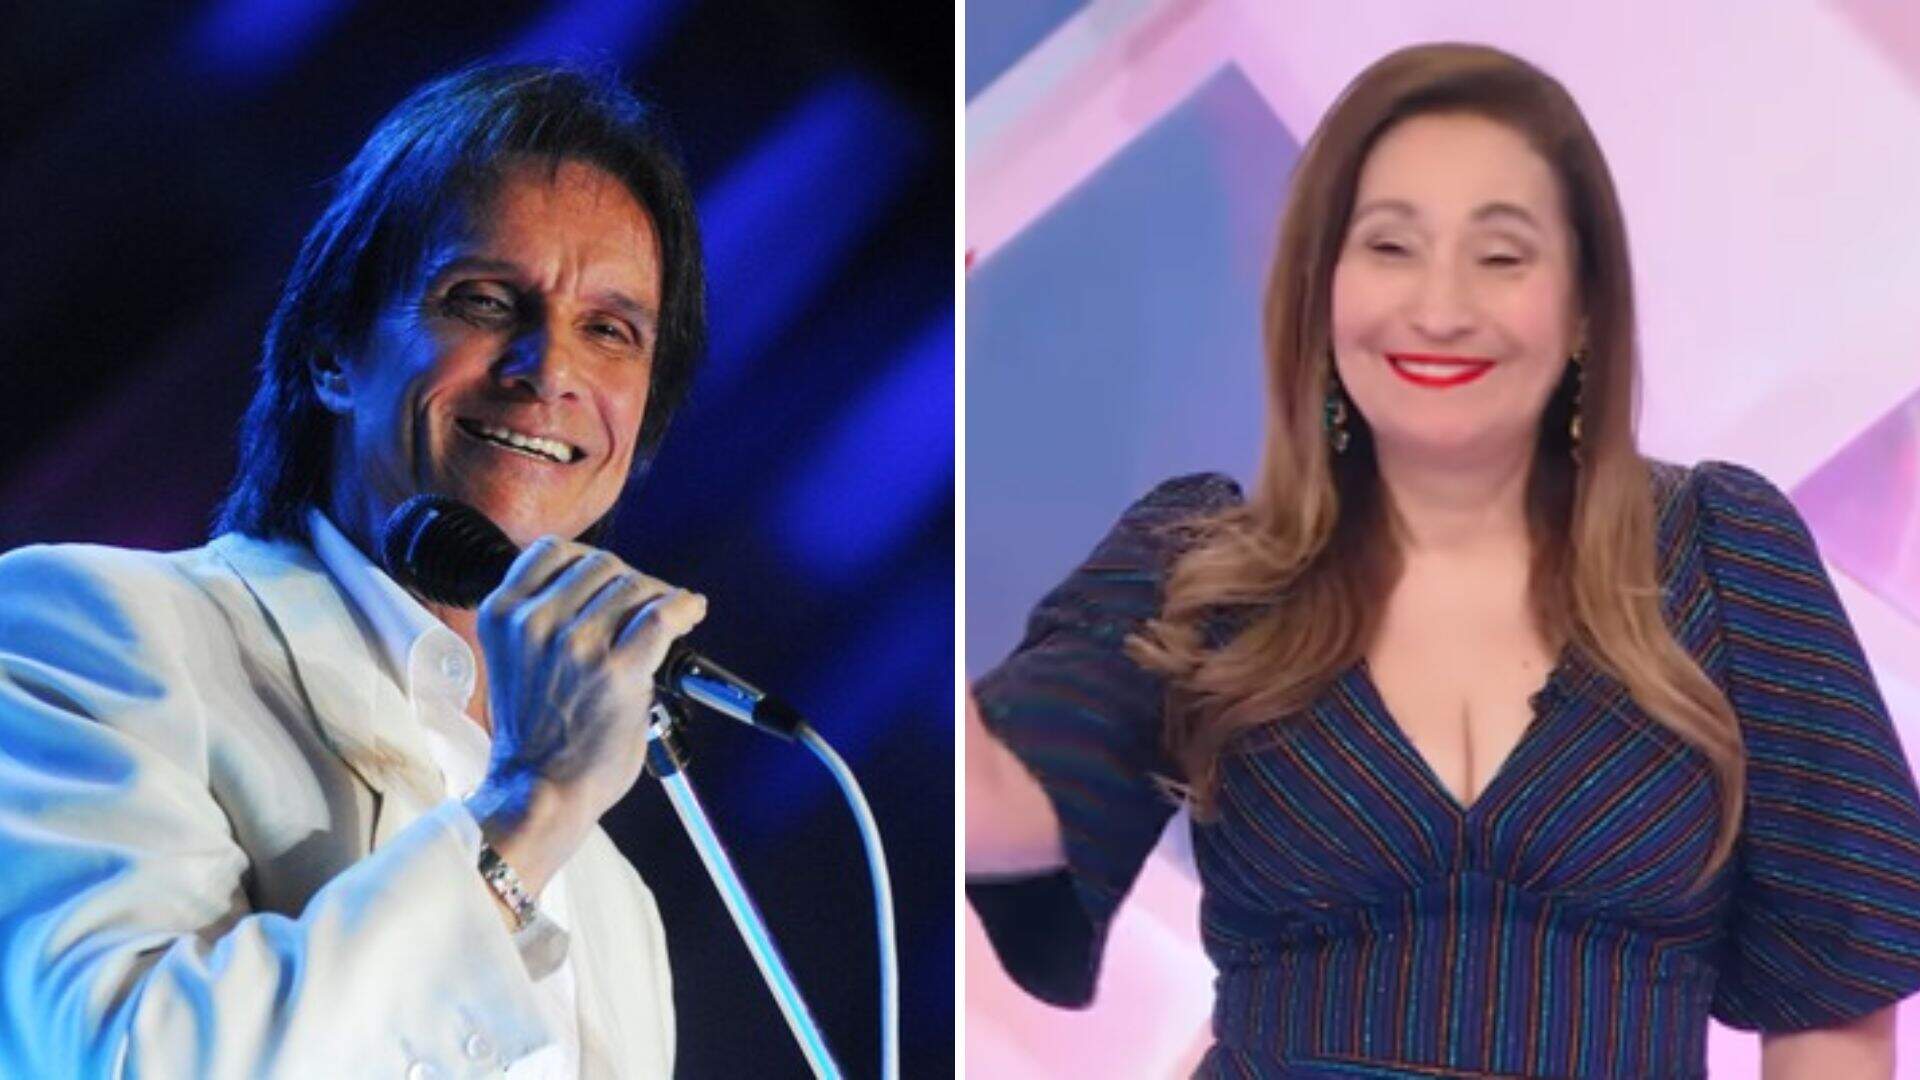 Sonia Abrão sai em defesa de Roberto Carlos e dispara críticas ao fã que interrompeu show do cantor - Metropolitana FM